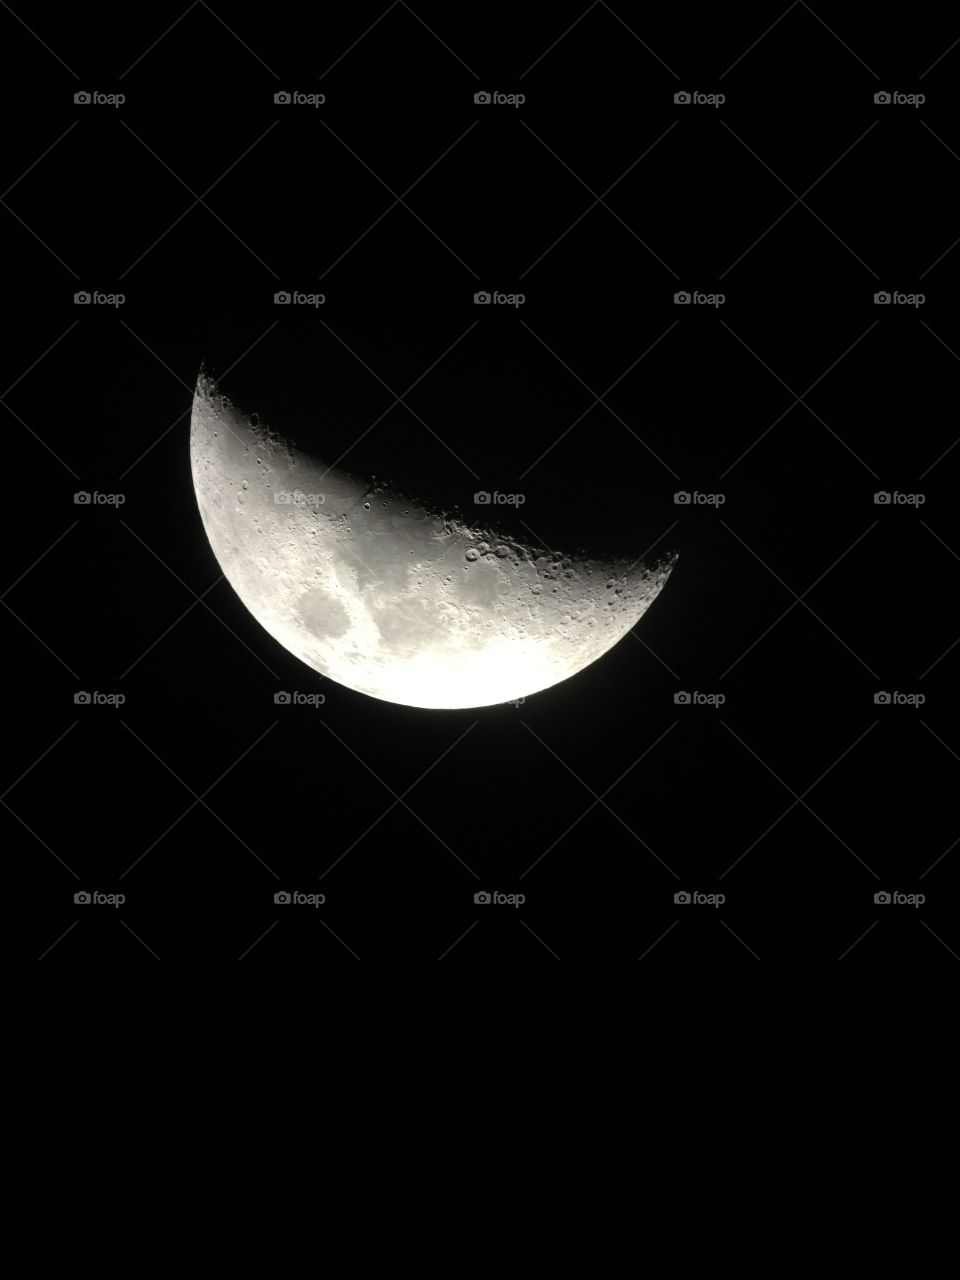 Moon
Photoed by www.chicherin.com 